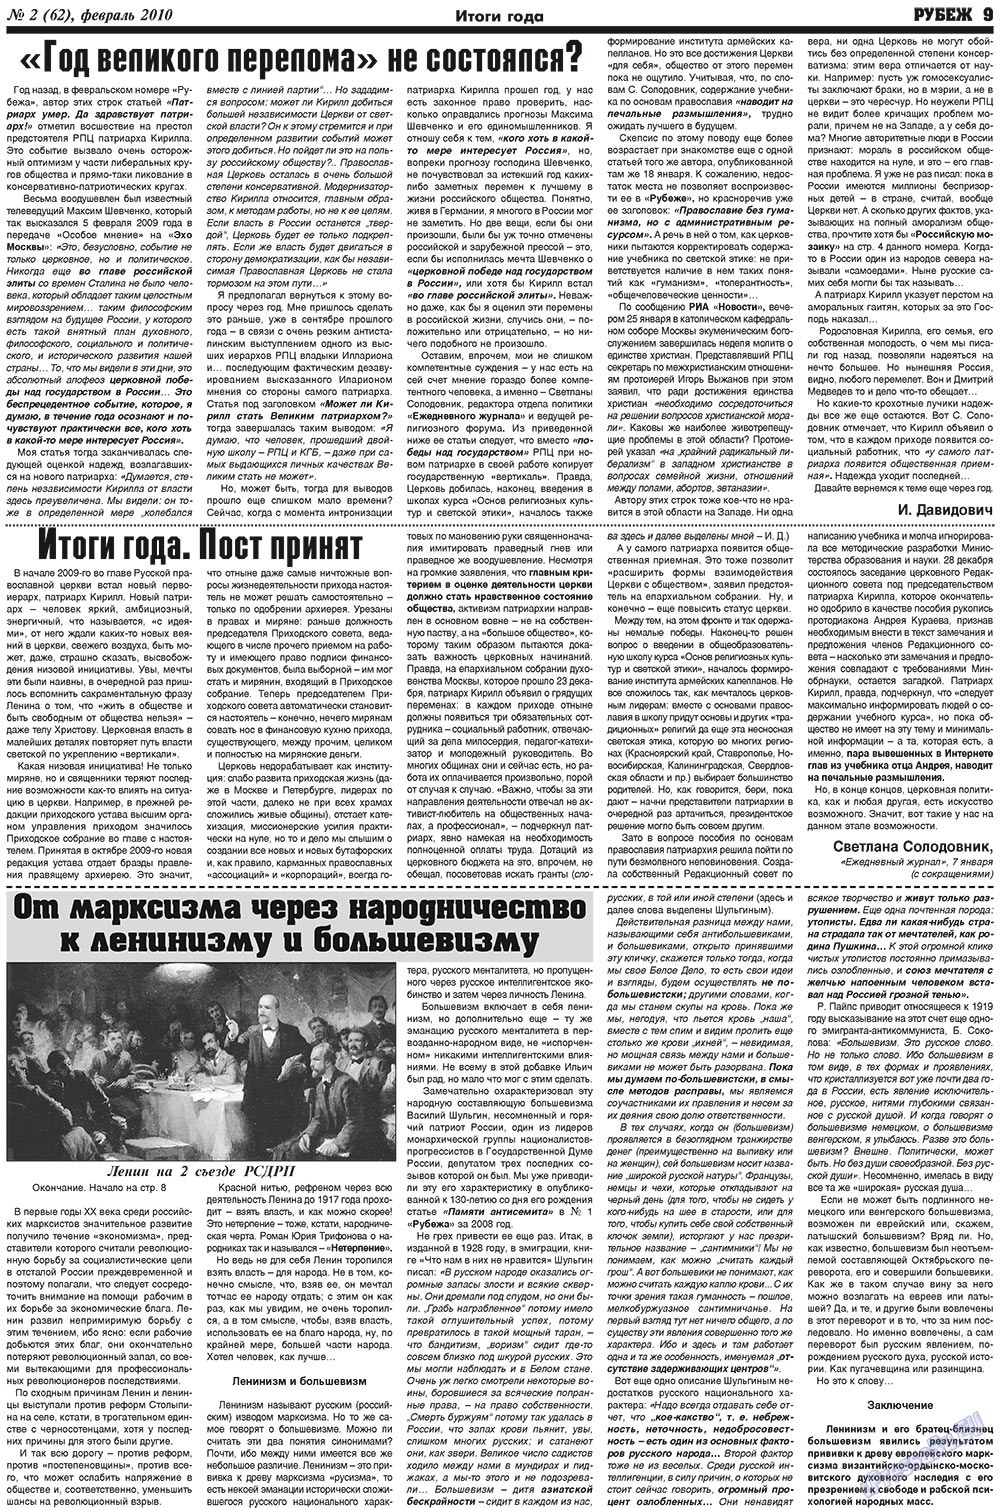 Рубеж (газета). 2010 год, номер 2, стр. 9